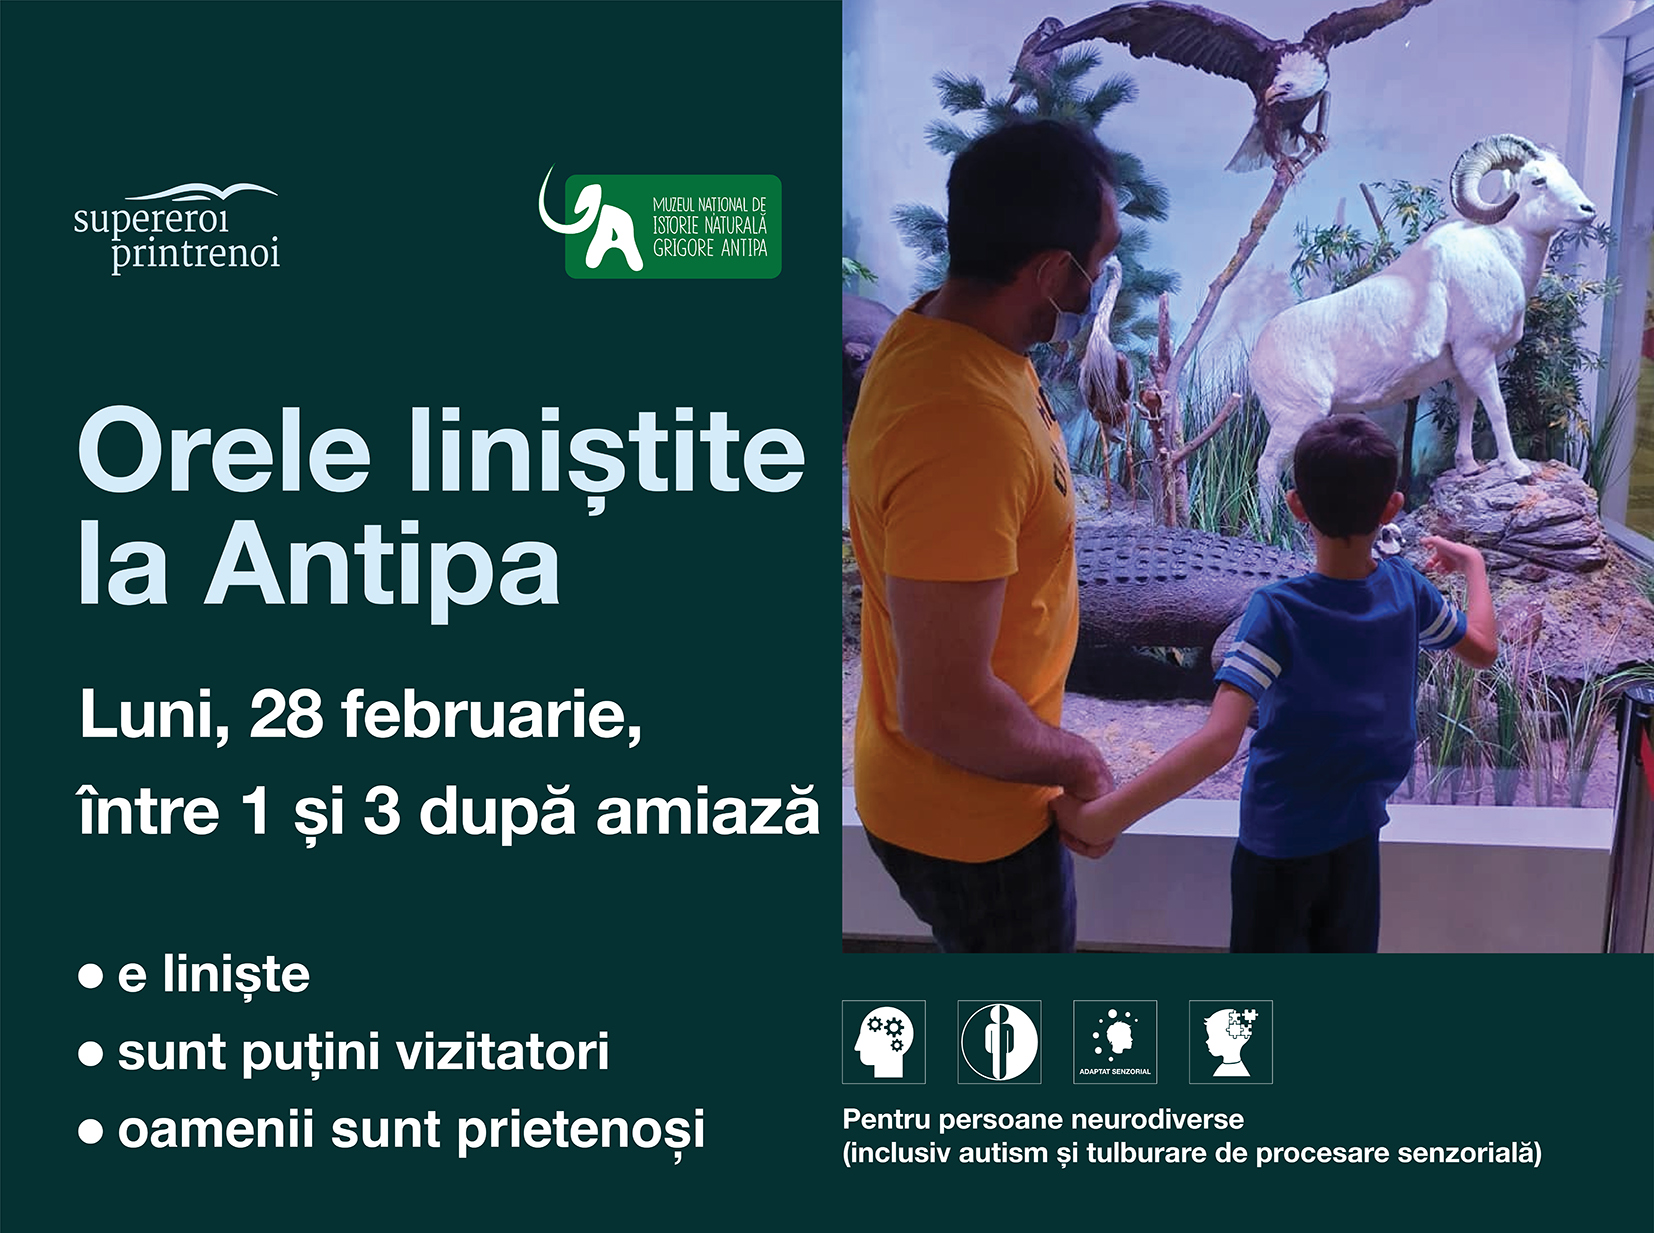 Orele liniștite de la Muzeul Antipa sunt organizate în luna februarie, în data de 28 februarie 2022.